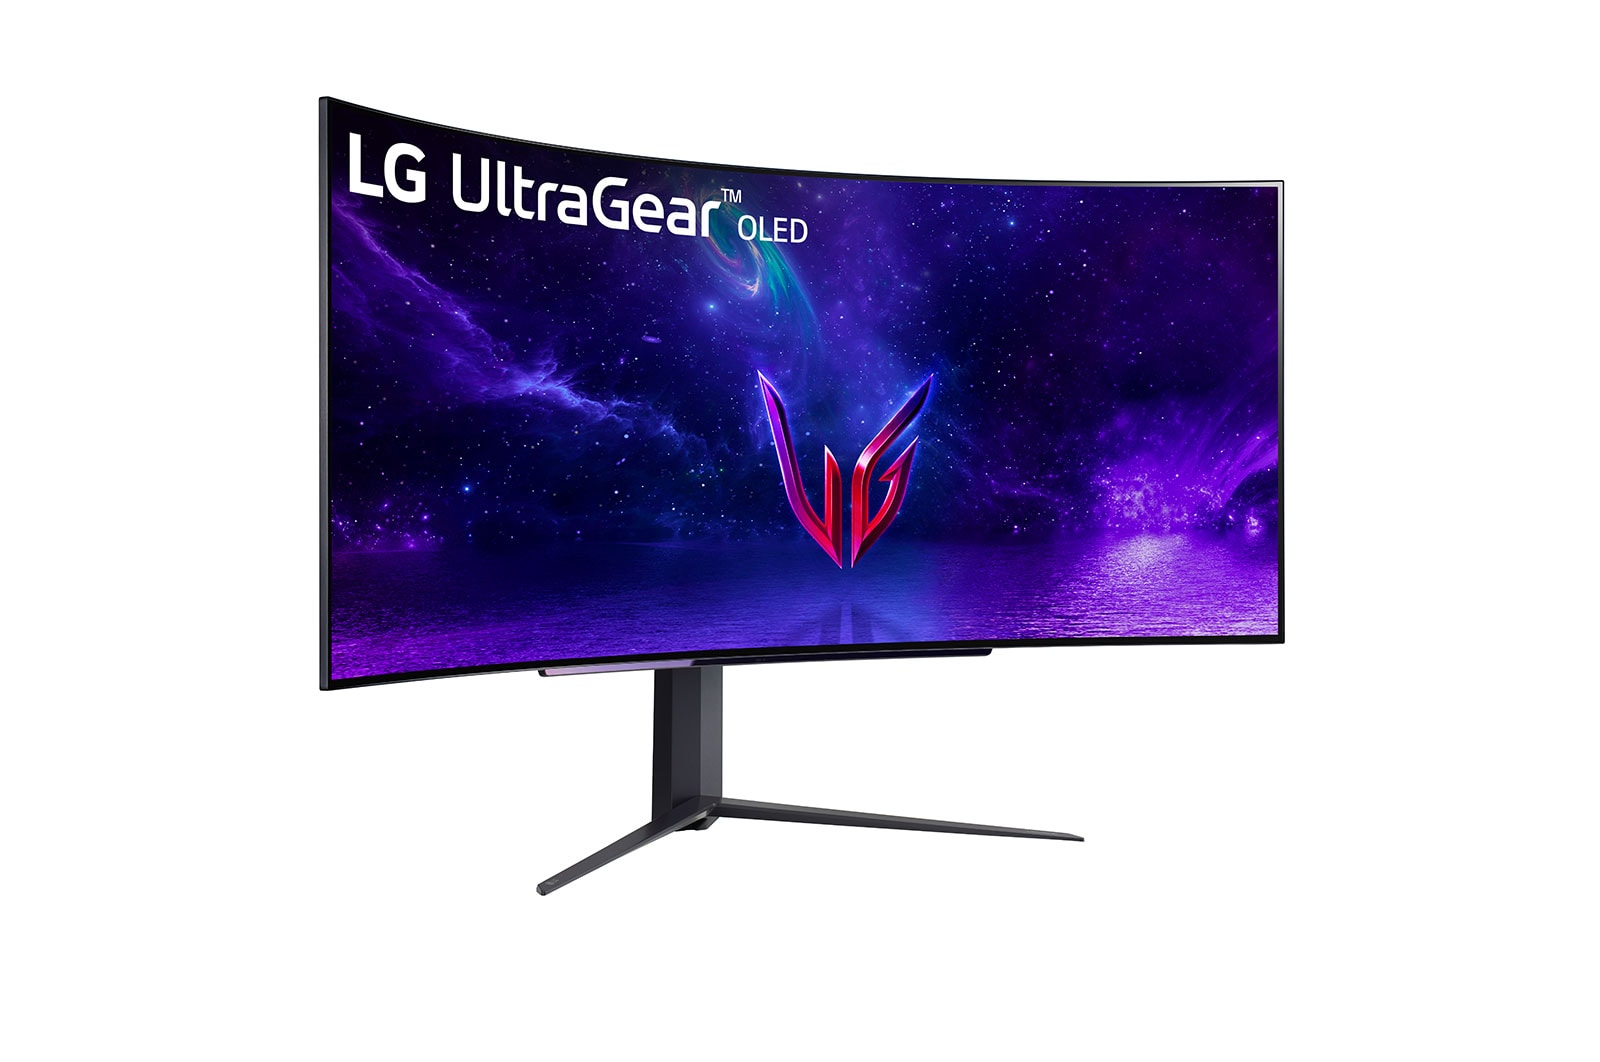 Immagine pubblicata in relazione al seguente contenuto: LG introduce il gaming monitor UltraGear 45GR95QE-B con pannello OLED da 45-inch | Nome immagine: news33901_LG-UltraGear-45GR95QE-B_1.jpg